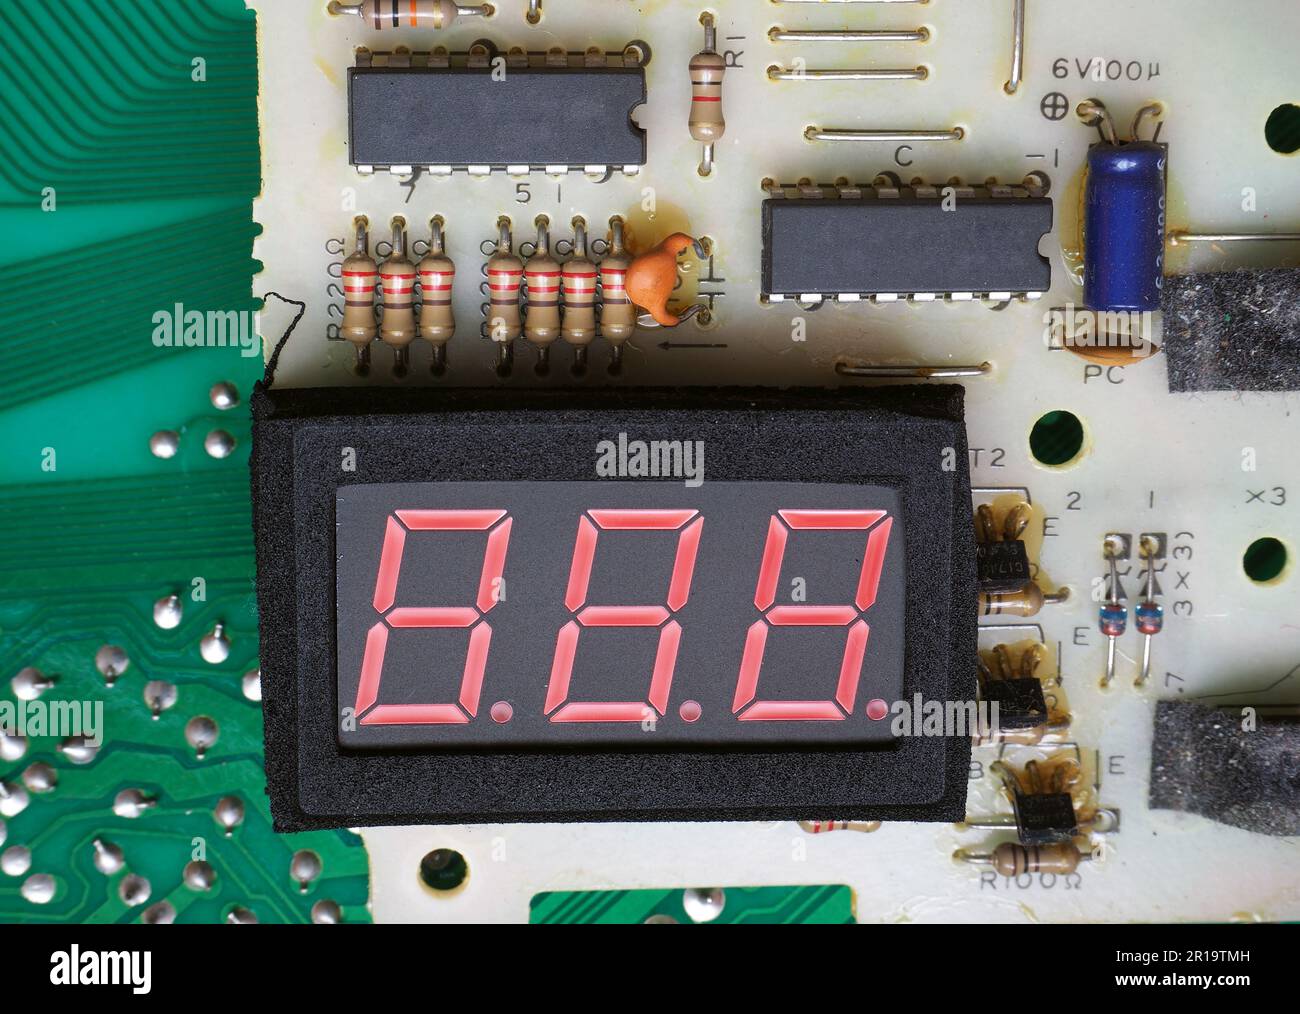 Pantalla en blanco de tres dígitos en la placa de circuito electrónico. Foto de stock